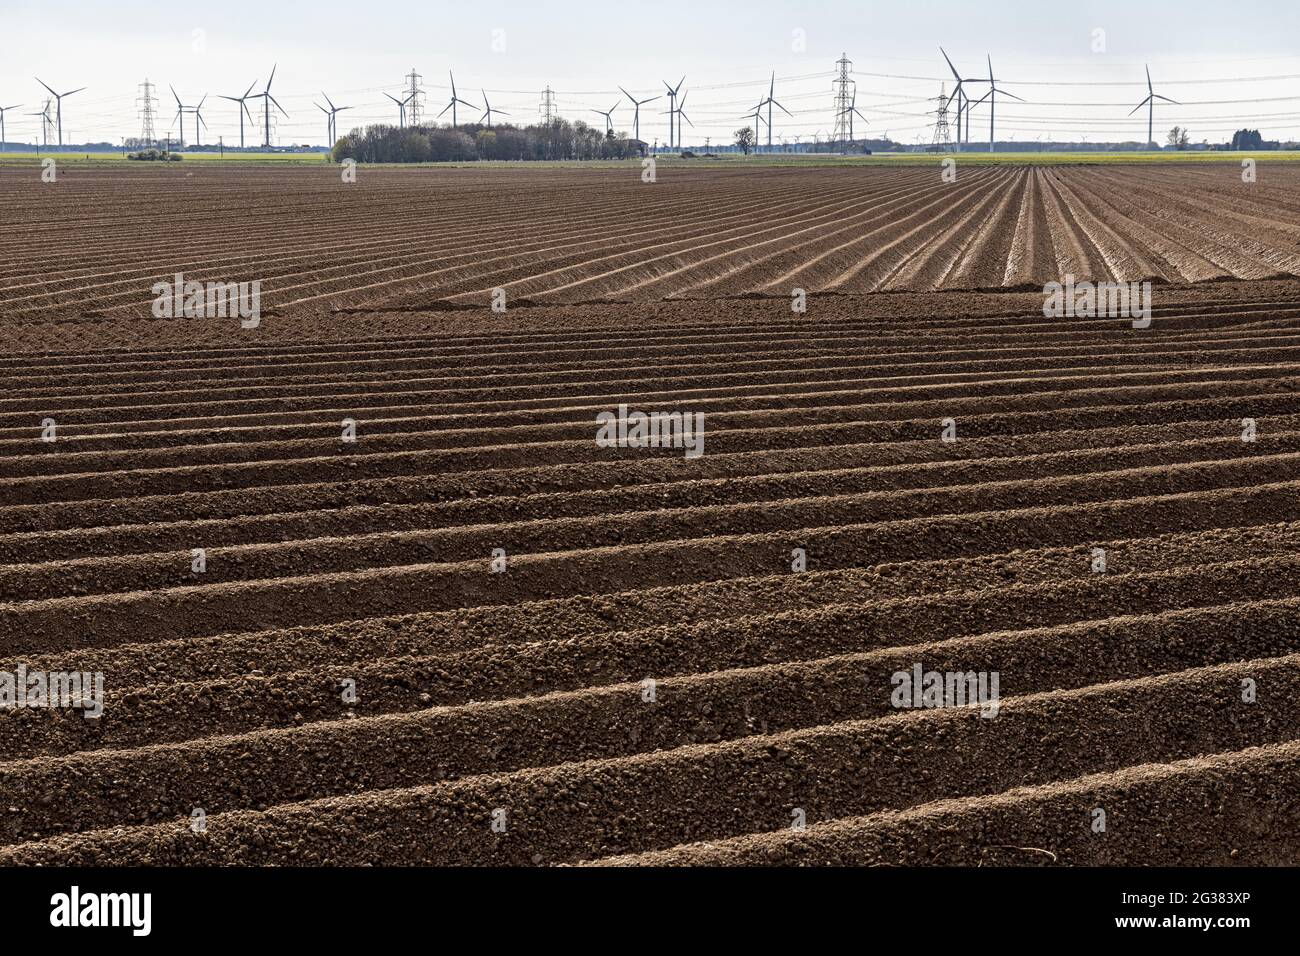 El suelo en los campos fue sembrado para plantar patatas en Amcotts, North Lincolnshire UK Foto de stock